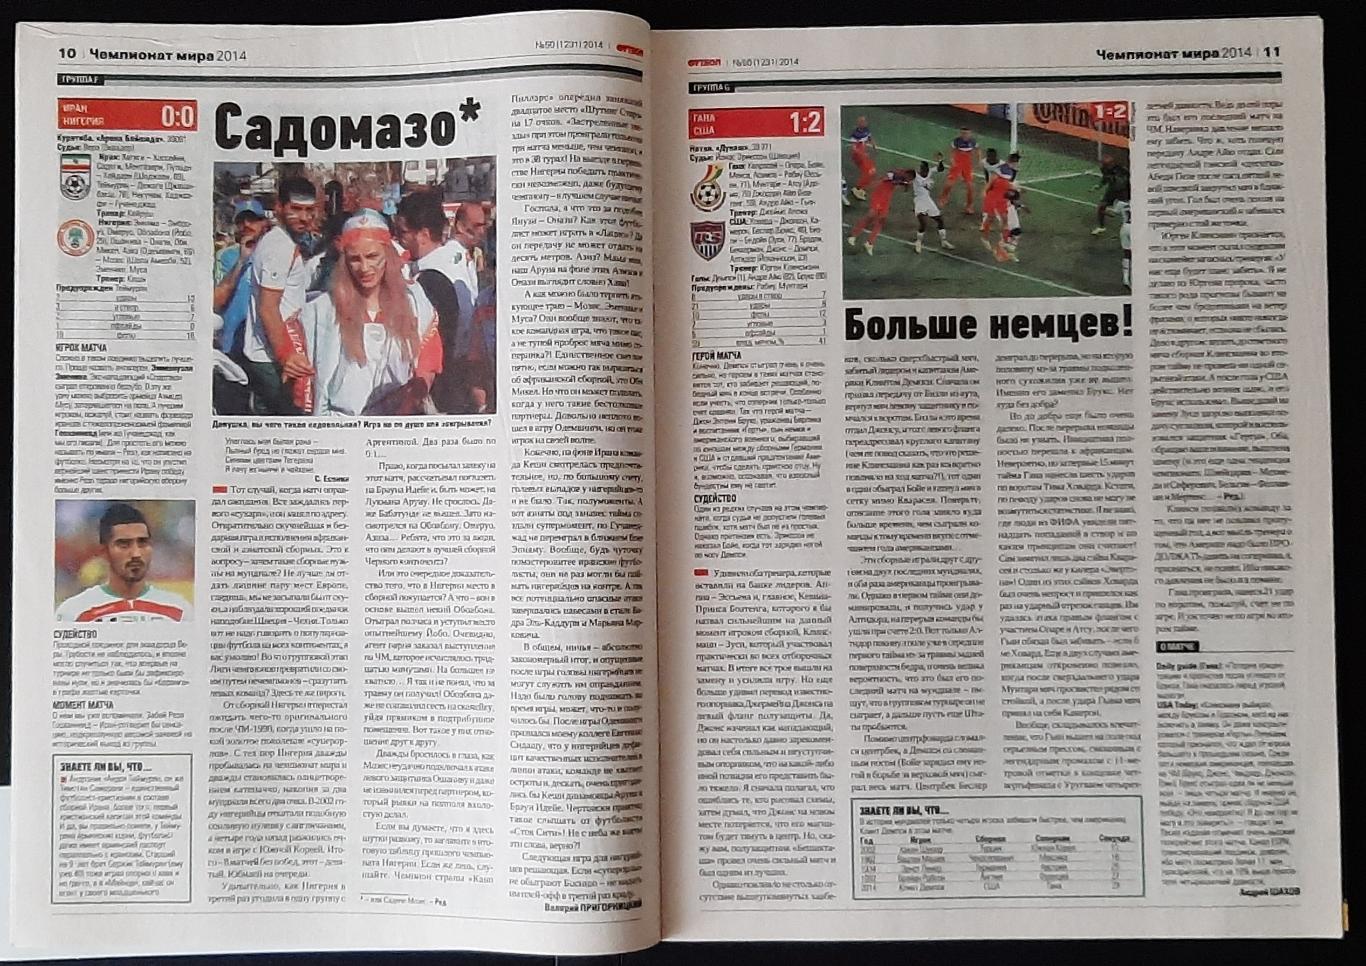 Журнал Футбол # 50 2014 матчі Чемпіонату світу 2